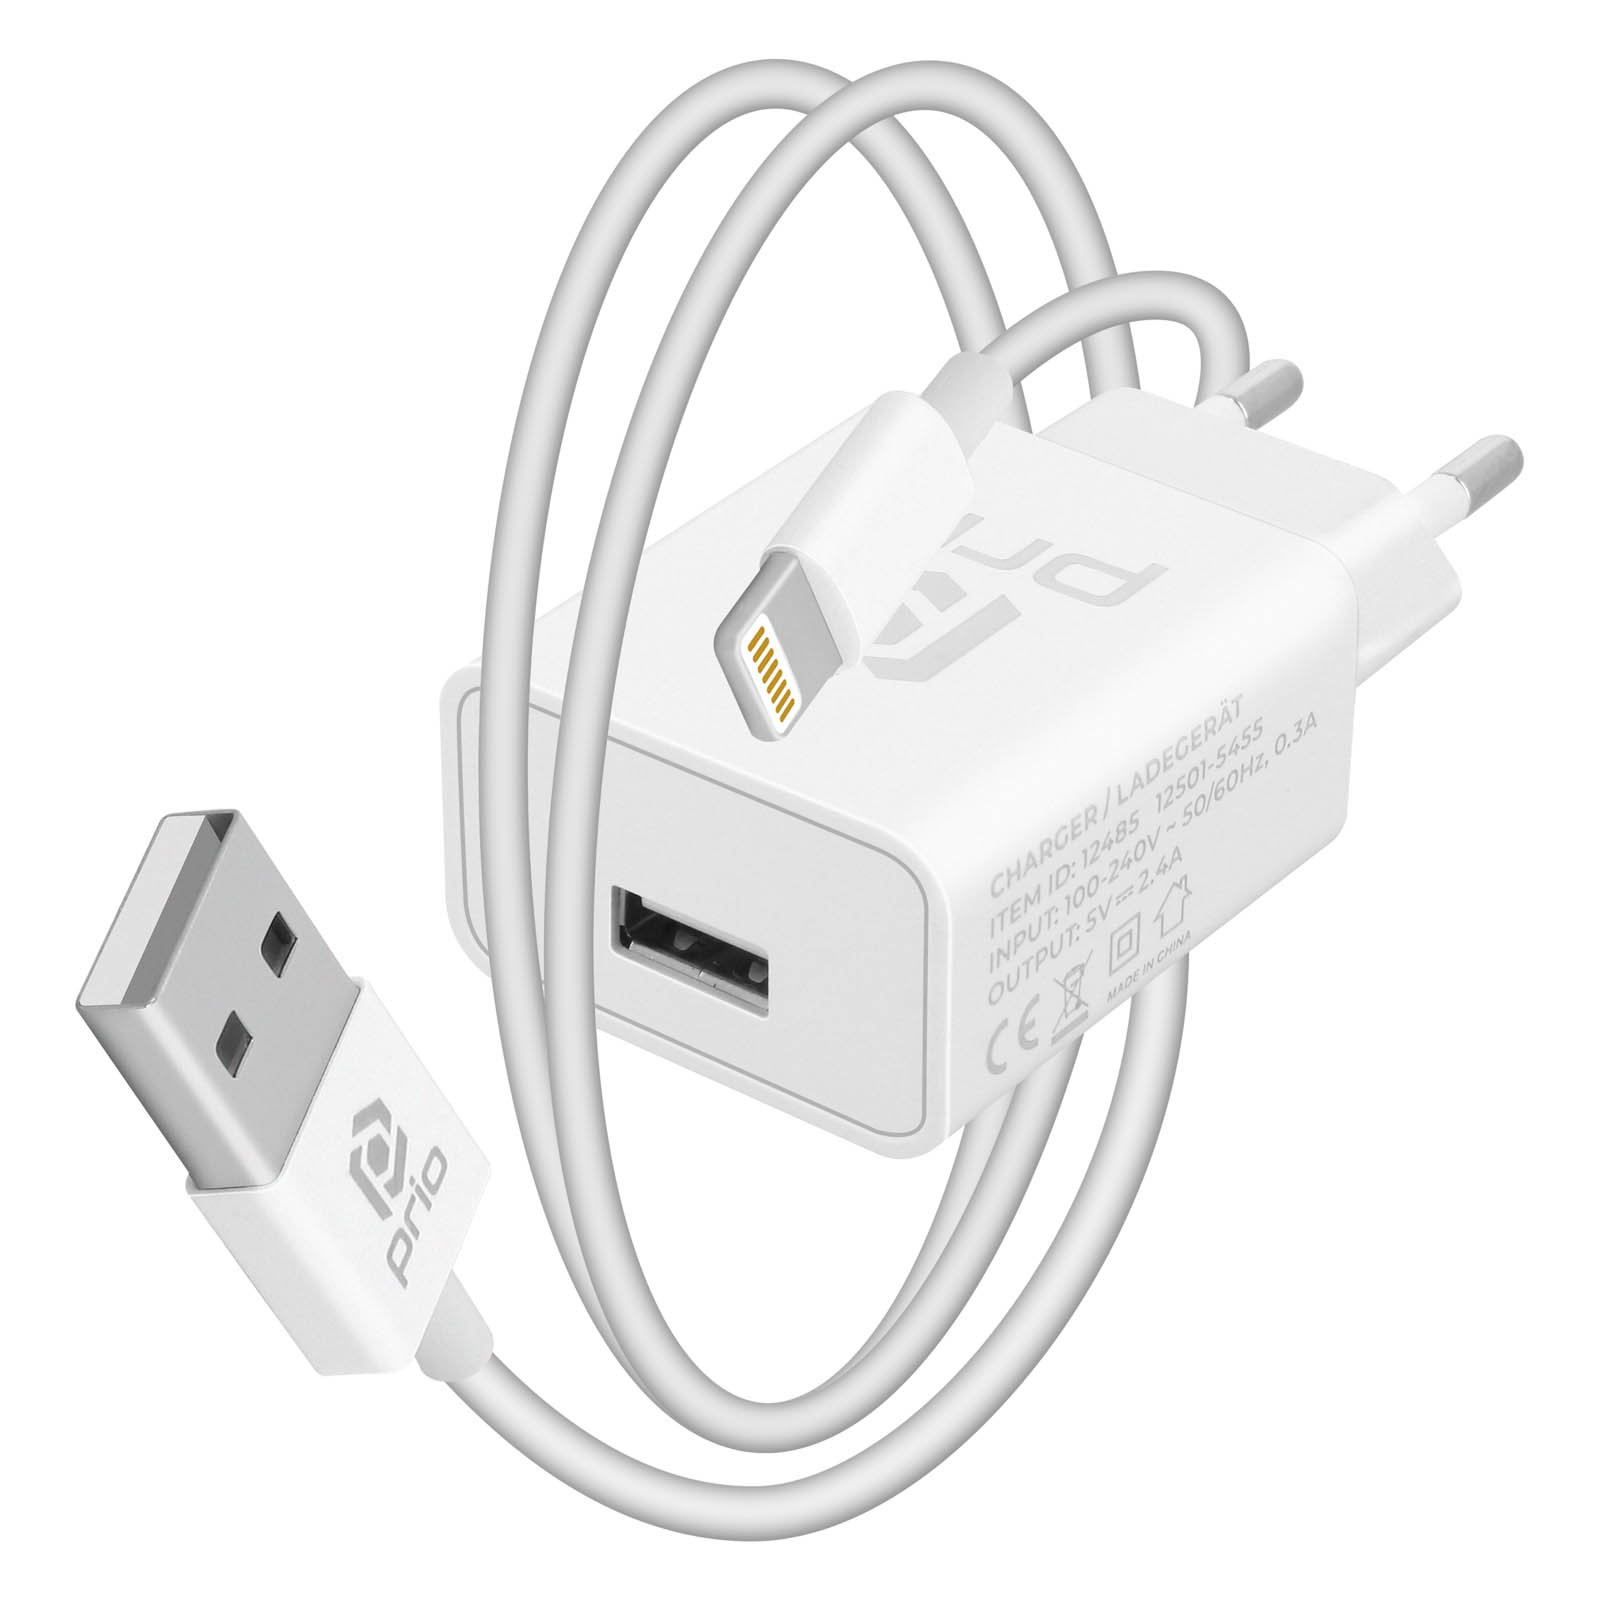 Carregador USB 5V 2.4A + Cabo Lightning MFI 1m